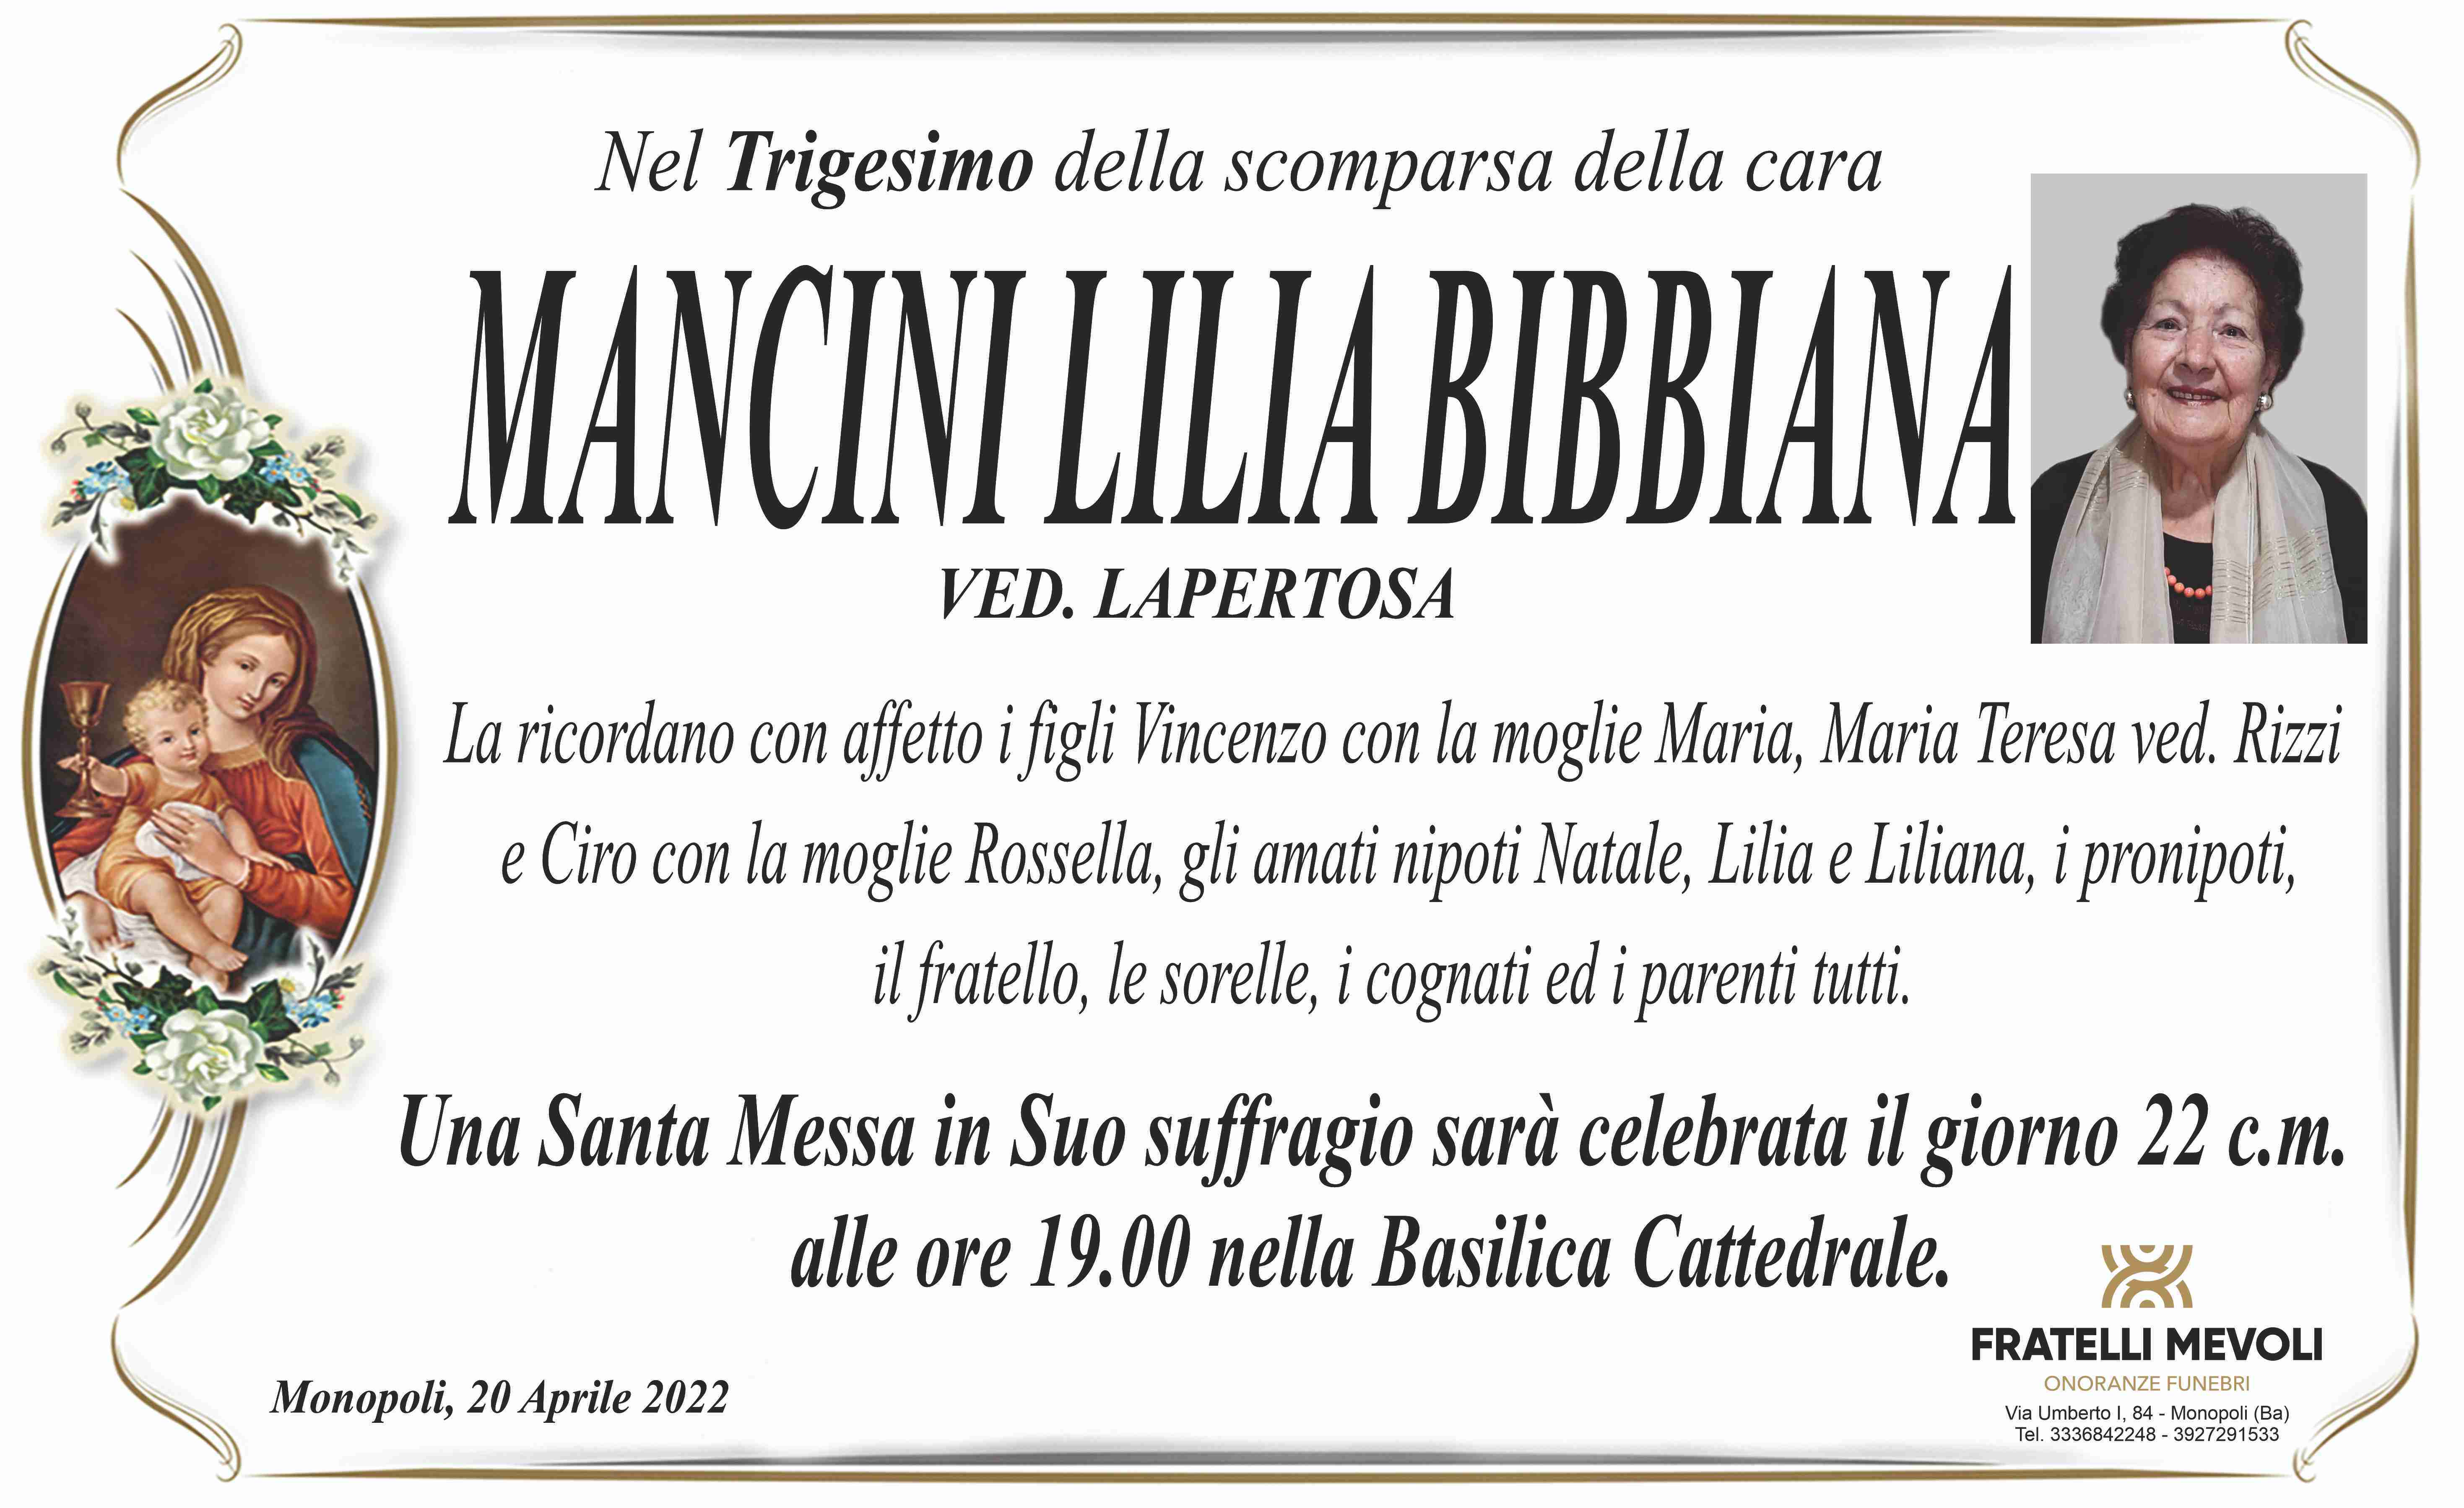 Lilia Bibbiana Mancini